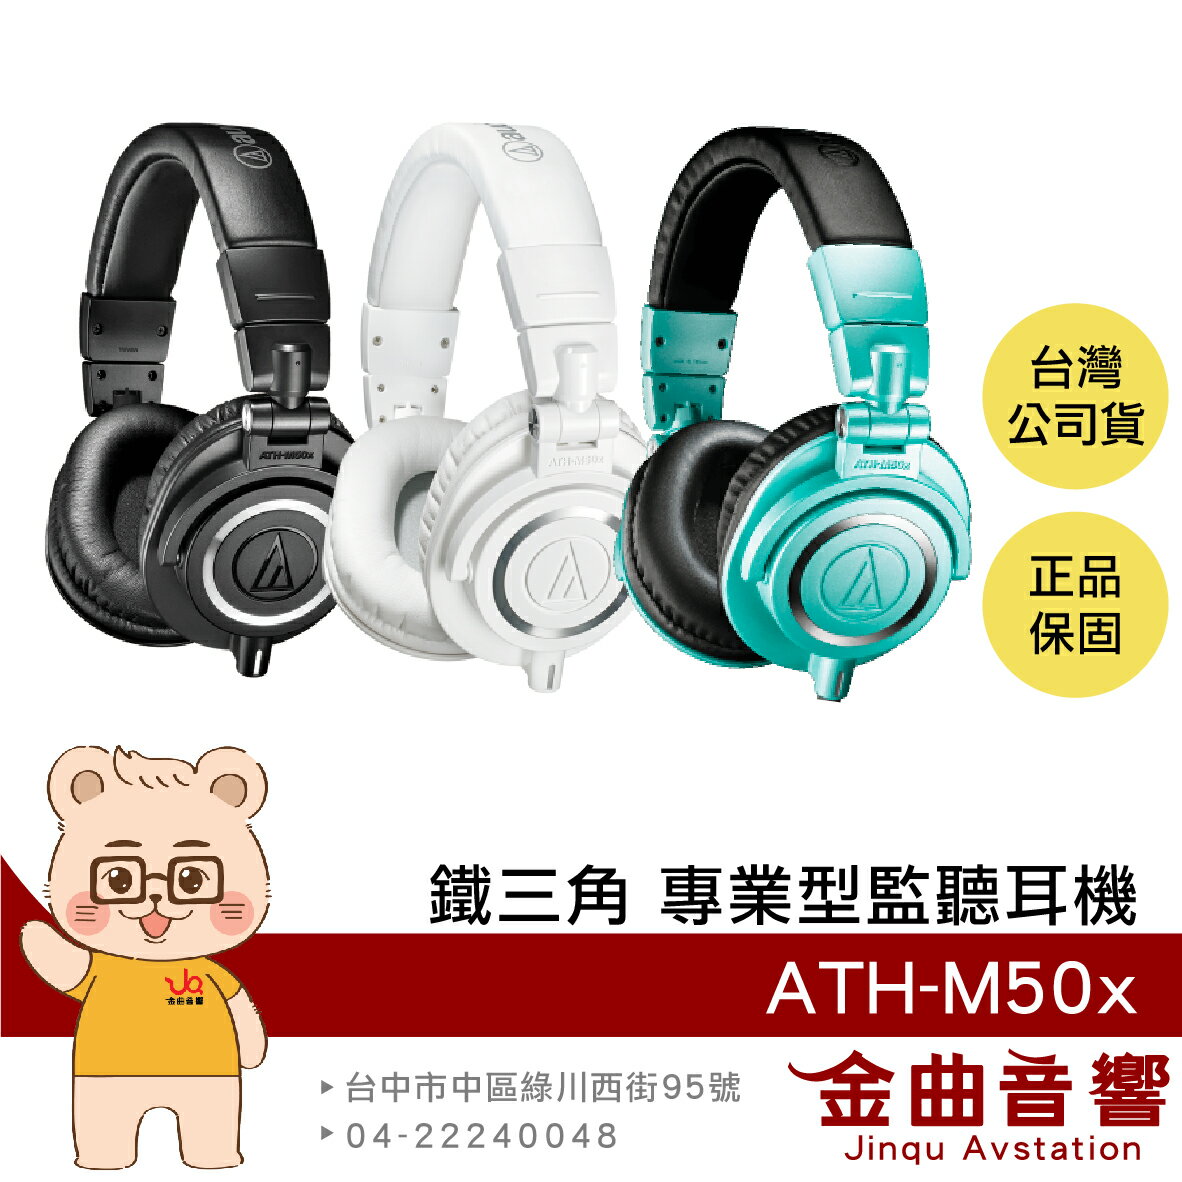 鐵三角 ATH-M50x 多色可選 高音質 錄音室用 專業 監聽 耳罩式 耳機 此款無藍芽 | 金曲音響